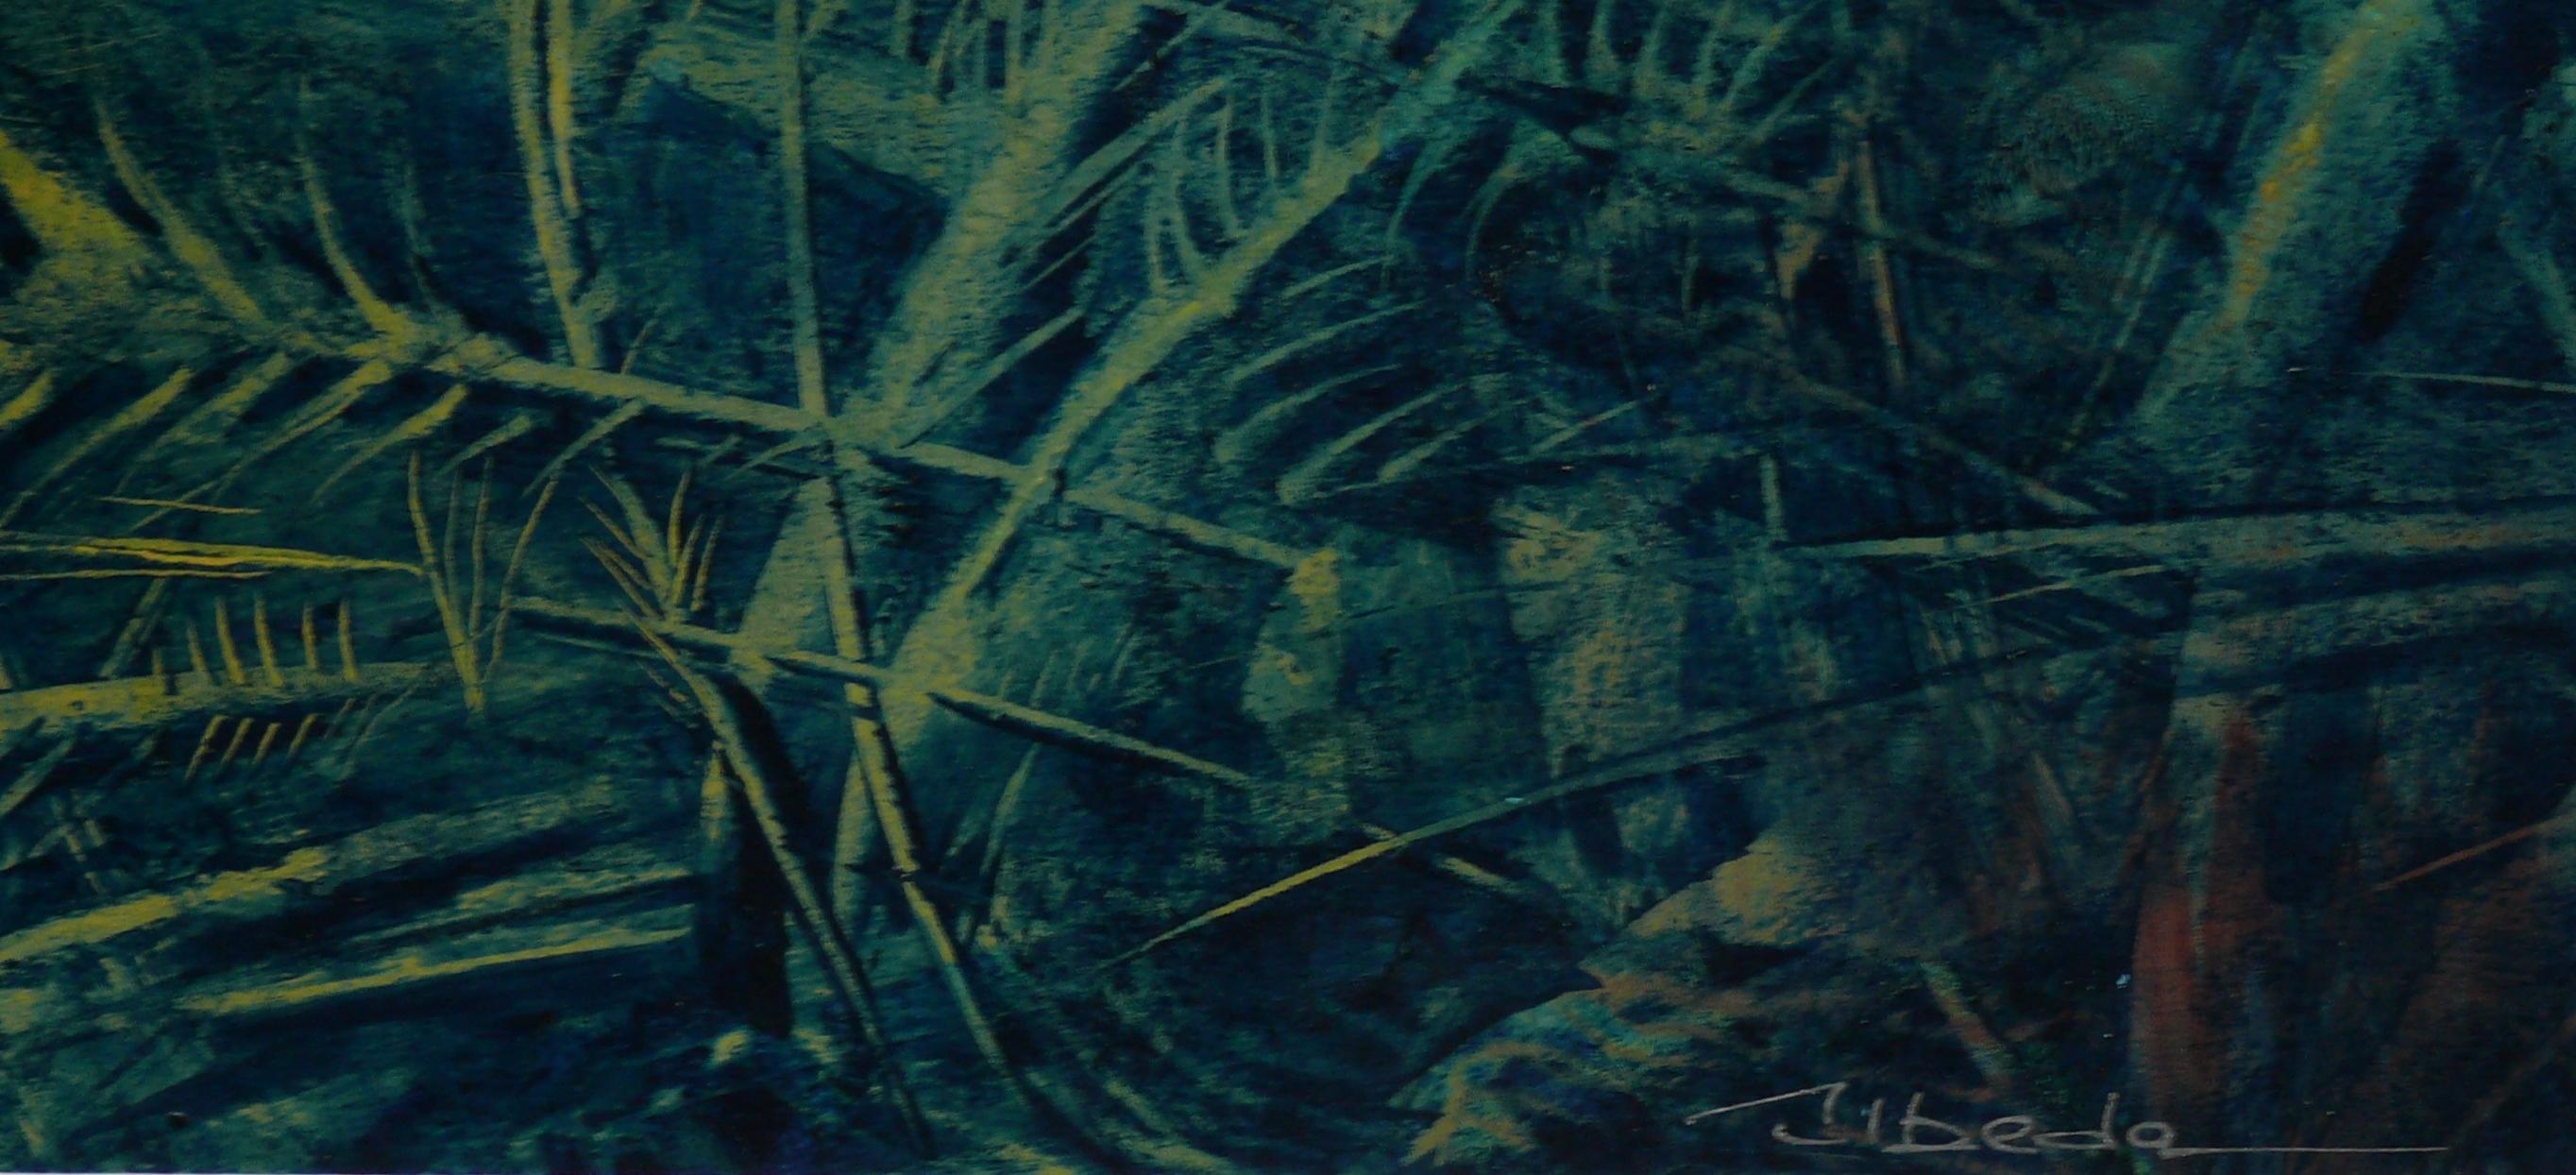 Série Under The Sea Nº 3. Úbeda. Paysage sous-marin fantastique à l'huile. - Painting de Ángel Luis Úbeda